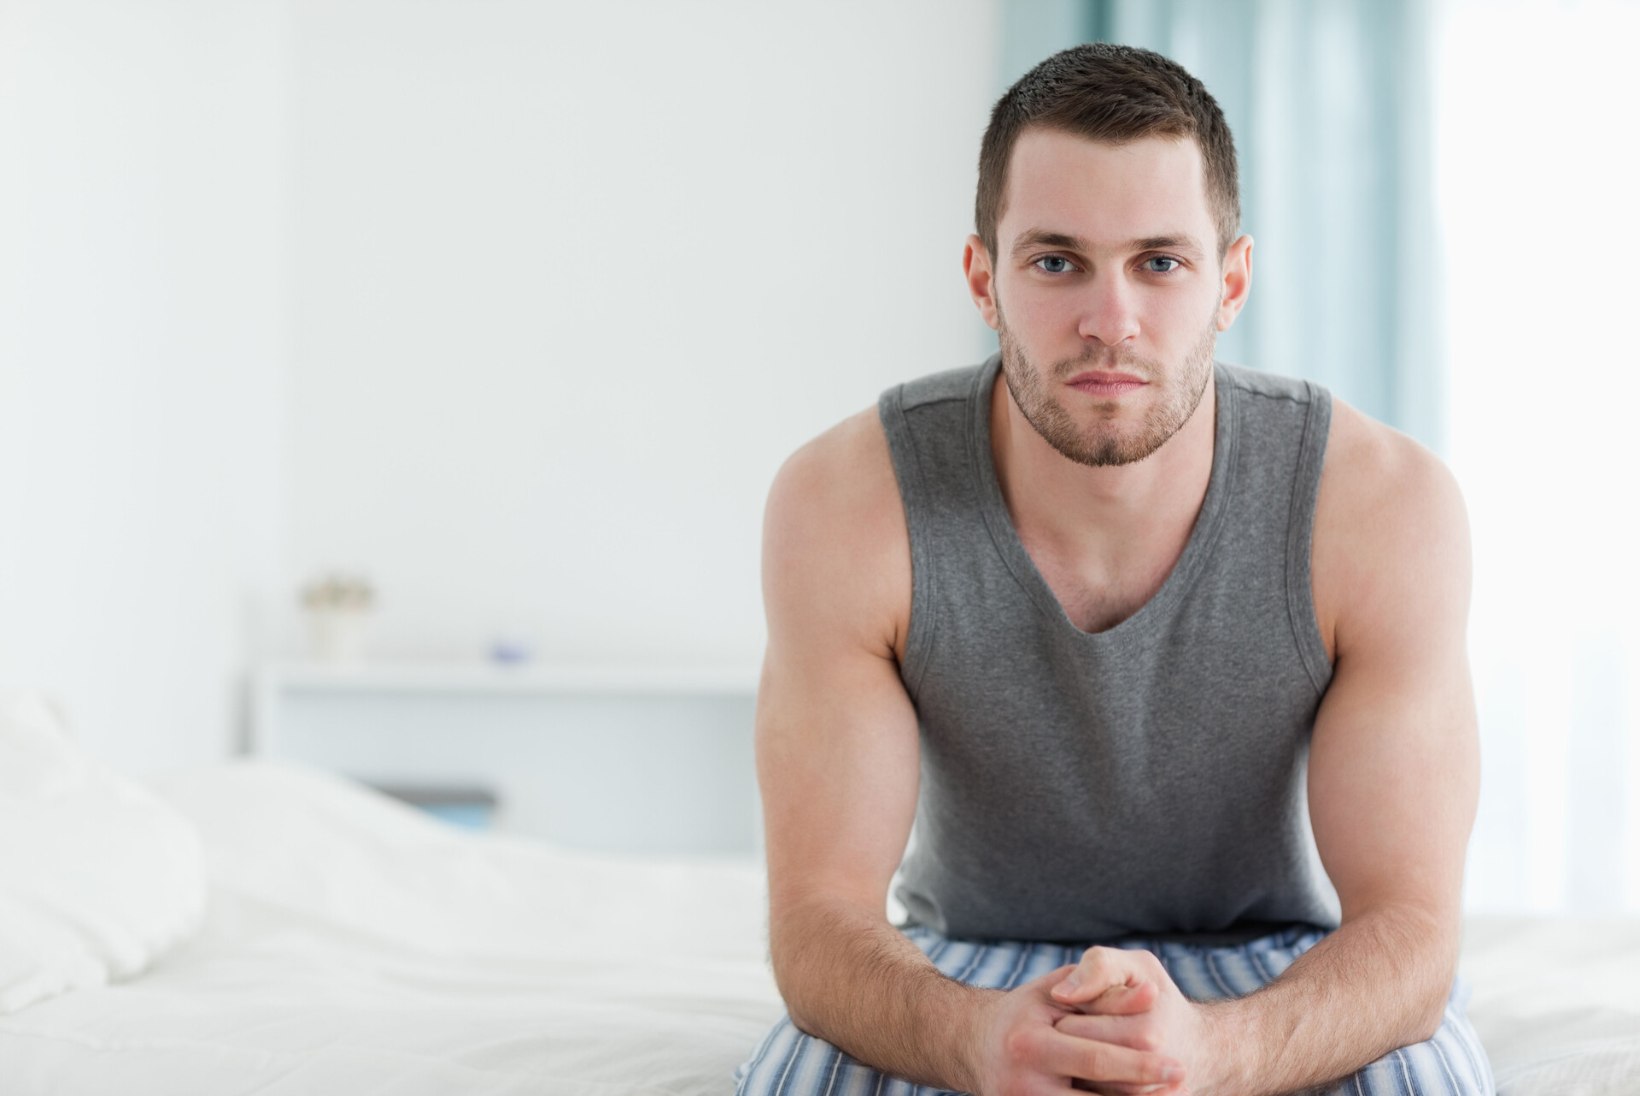 PAREM VÕIMEKUS VOODIS? Arst selgitab, kuidas testosteroon mõjutab mehe seksuaalsust ja lihasmassi